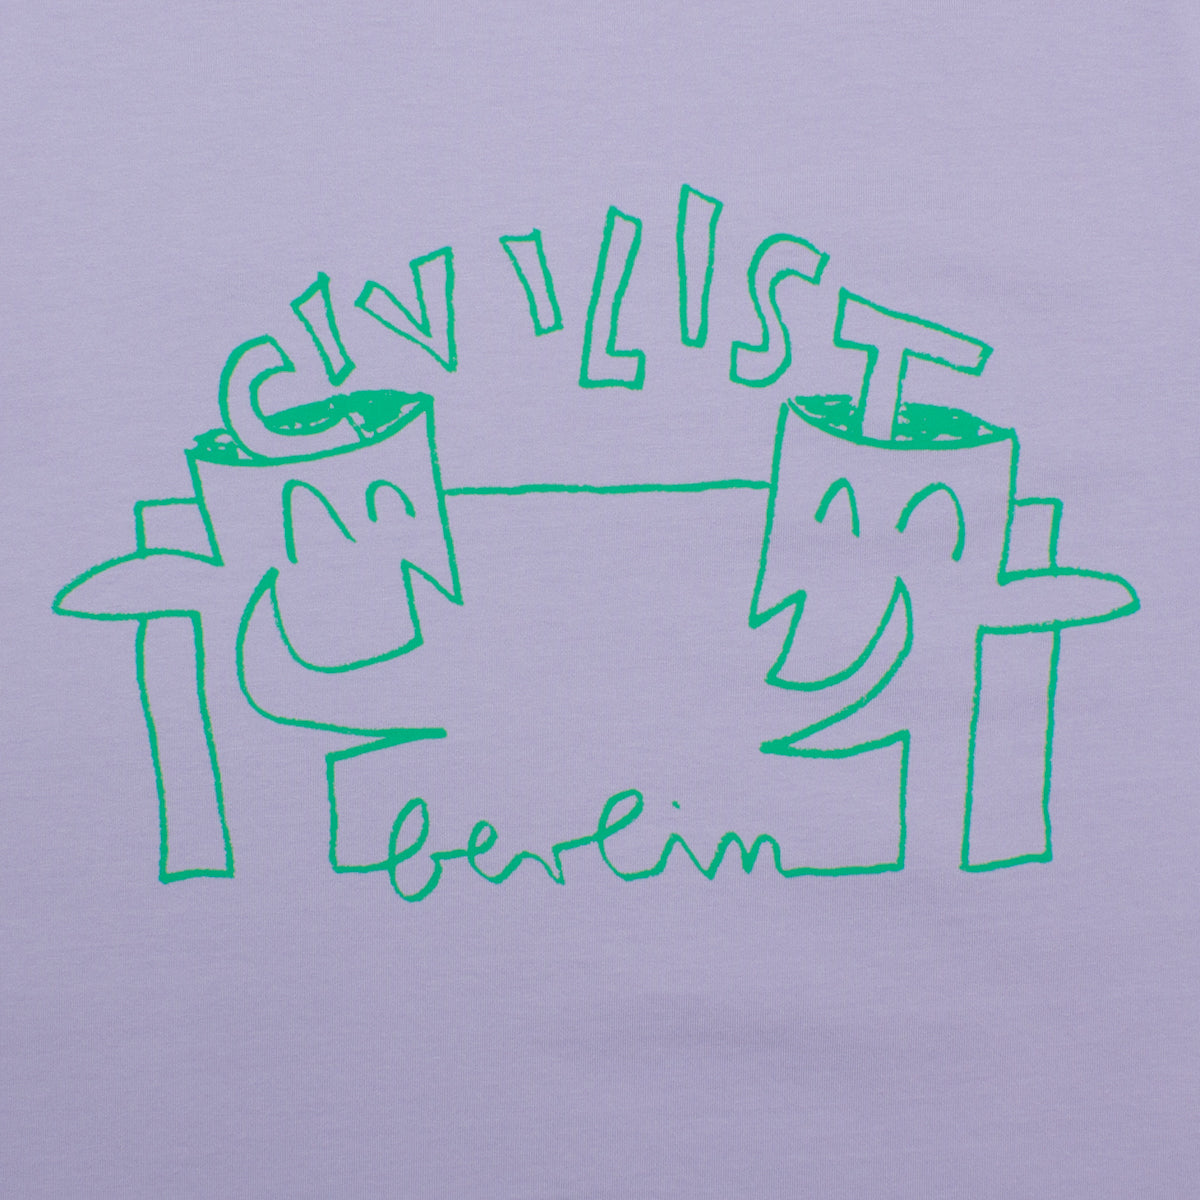 Civilist | Slinky T-Shirt Color : Lavender